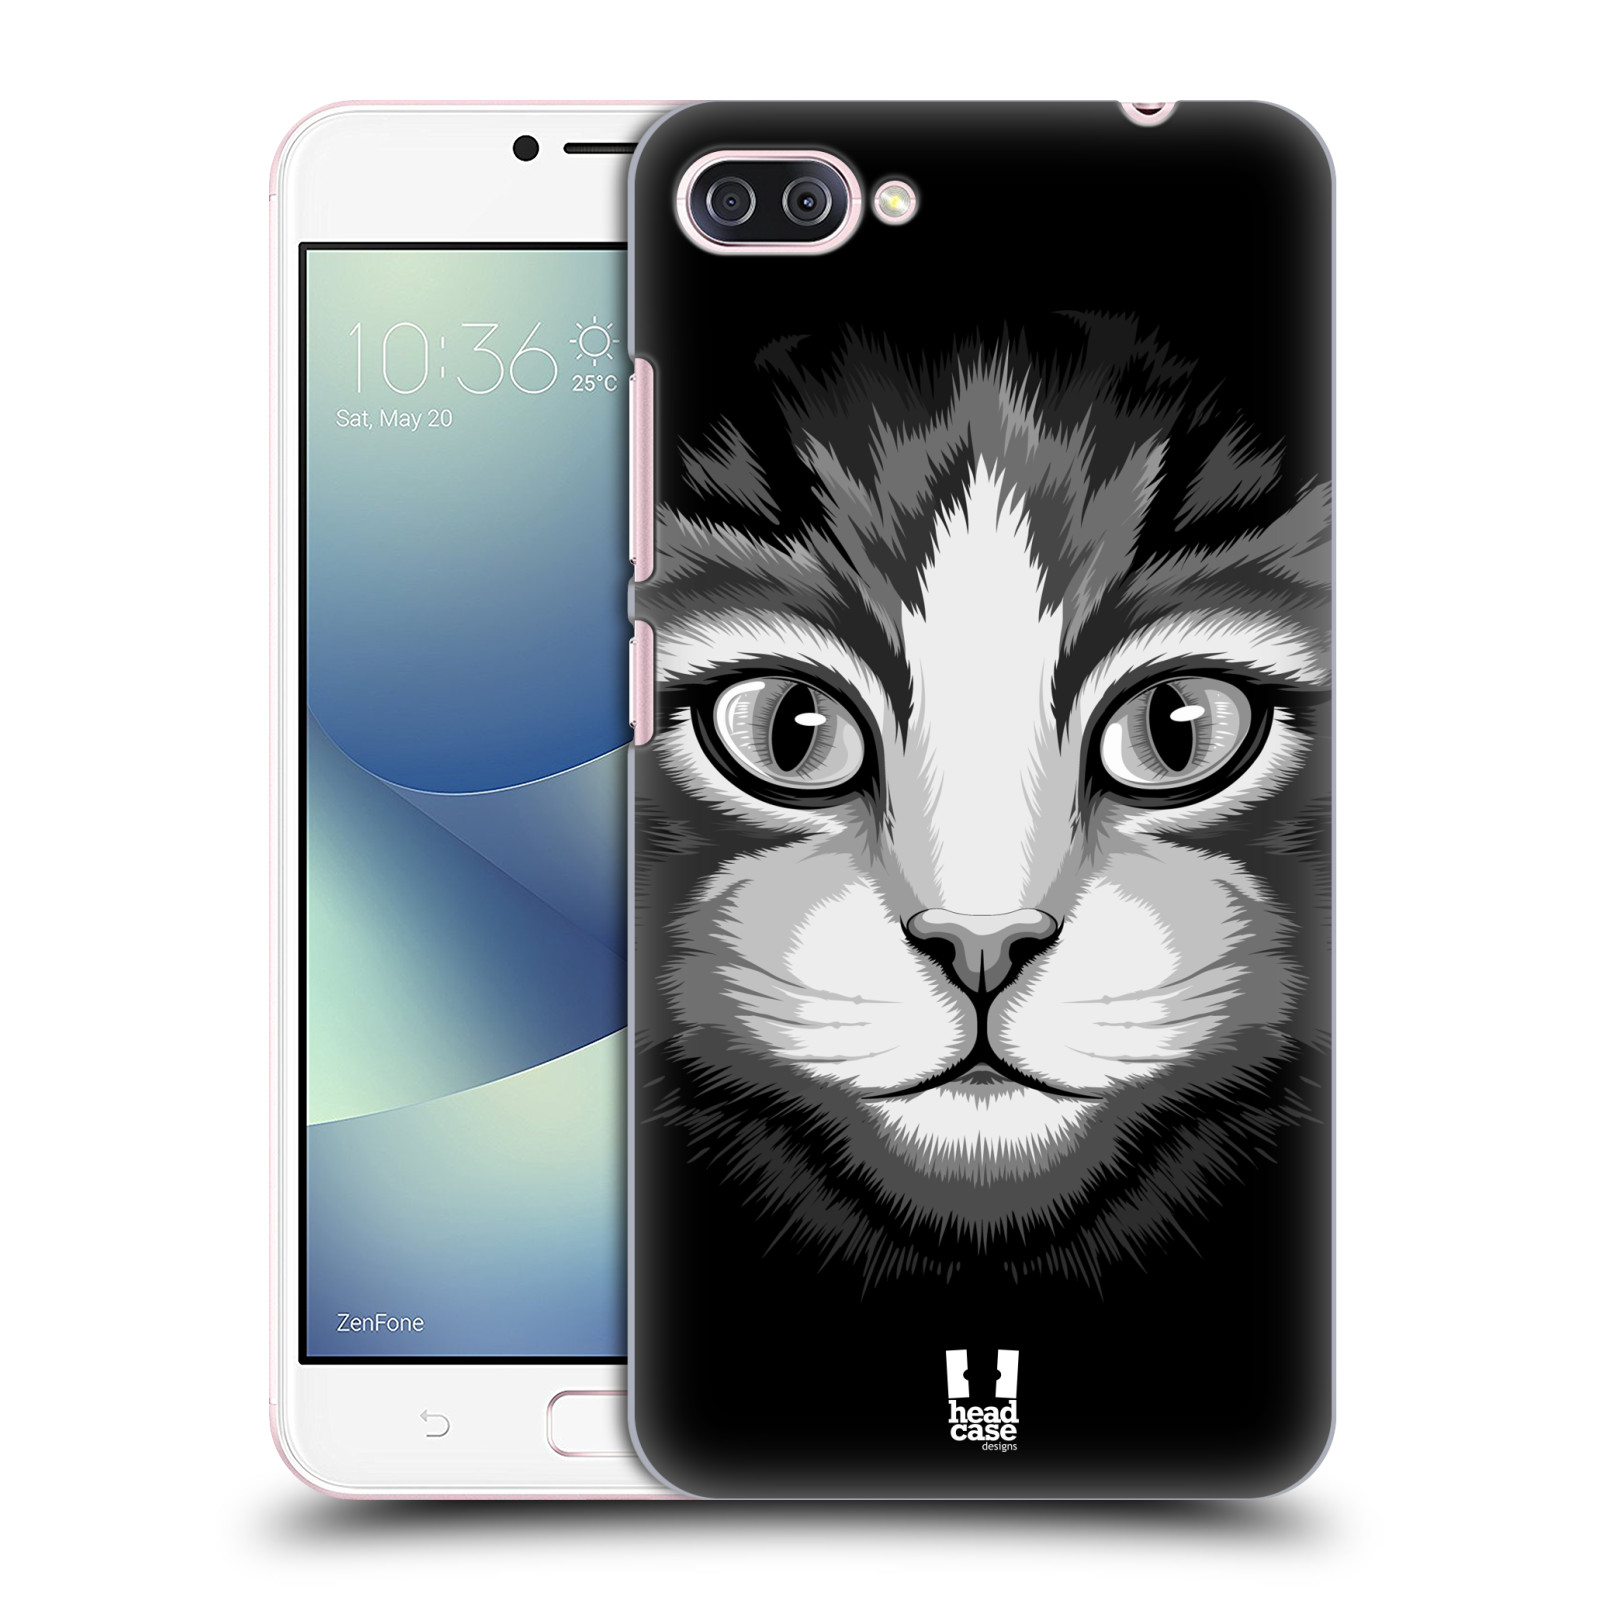 HEAD CASE plastový obal na mobil Asus Zenfone 4 MAX ZC554KL vzor Zvíře kreslená tvář 2 kočička